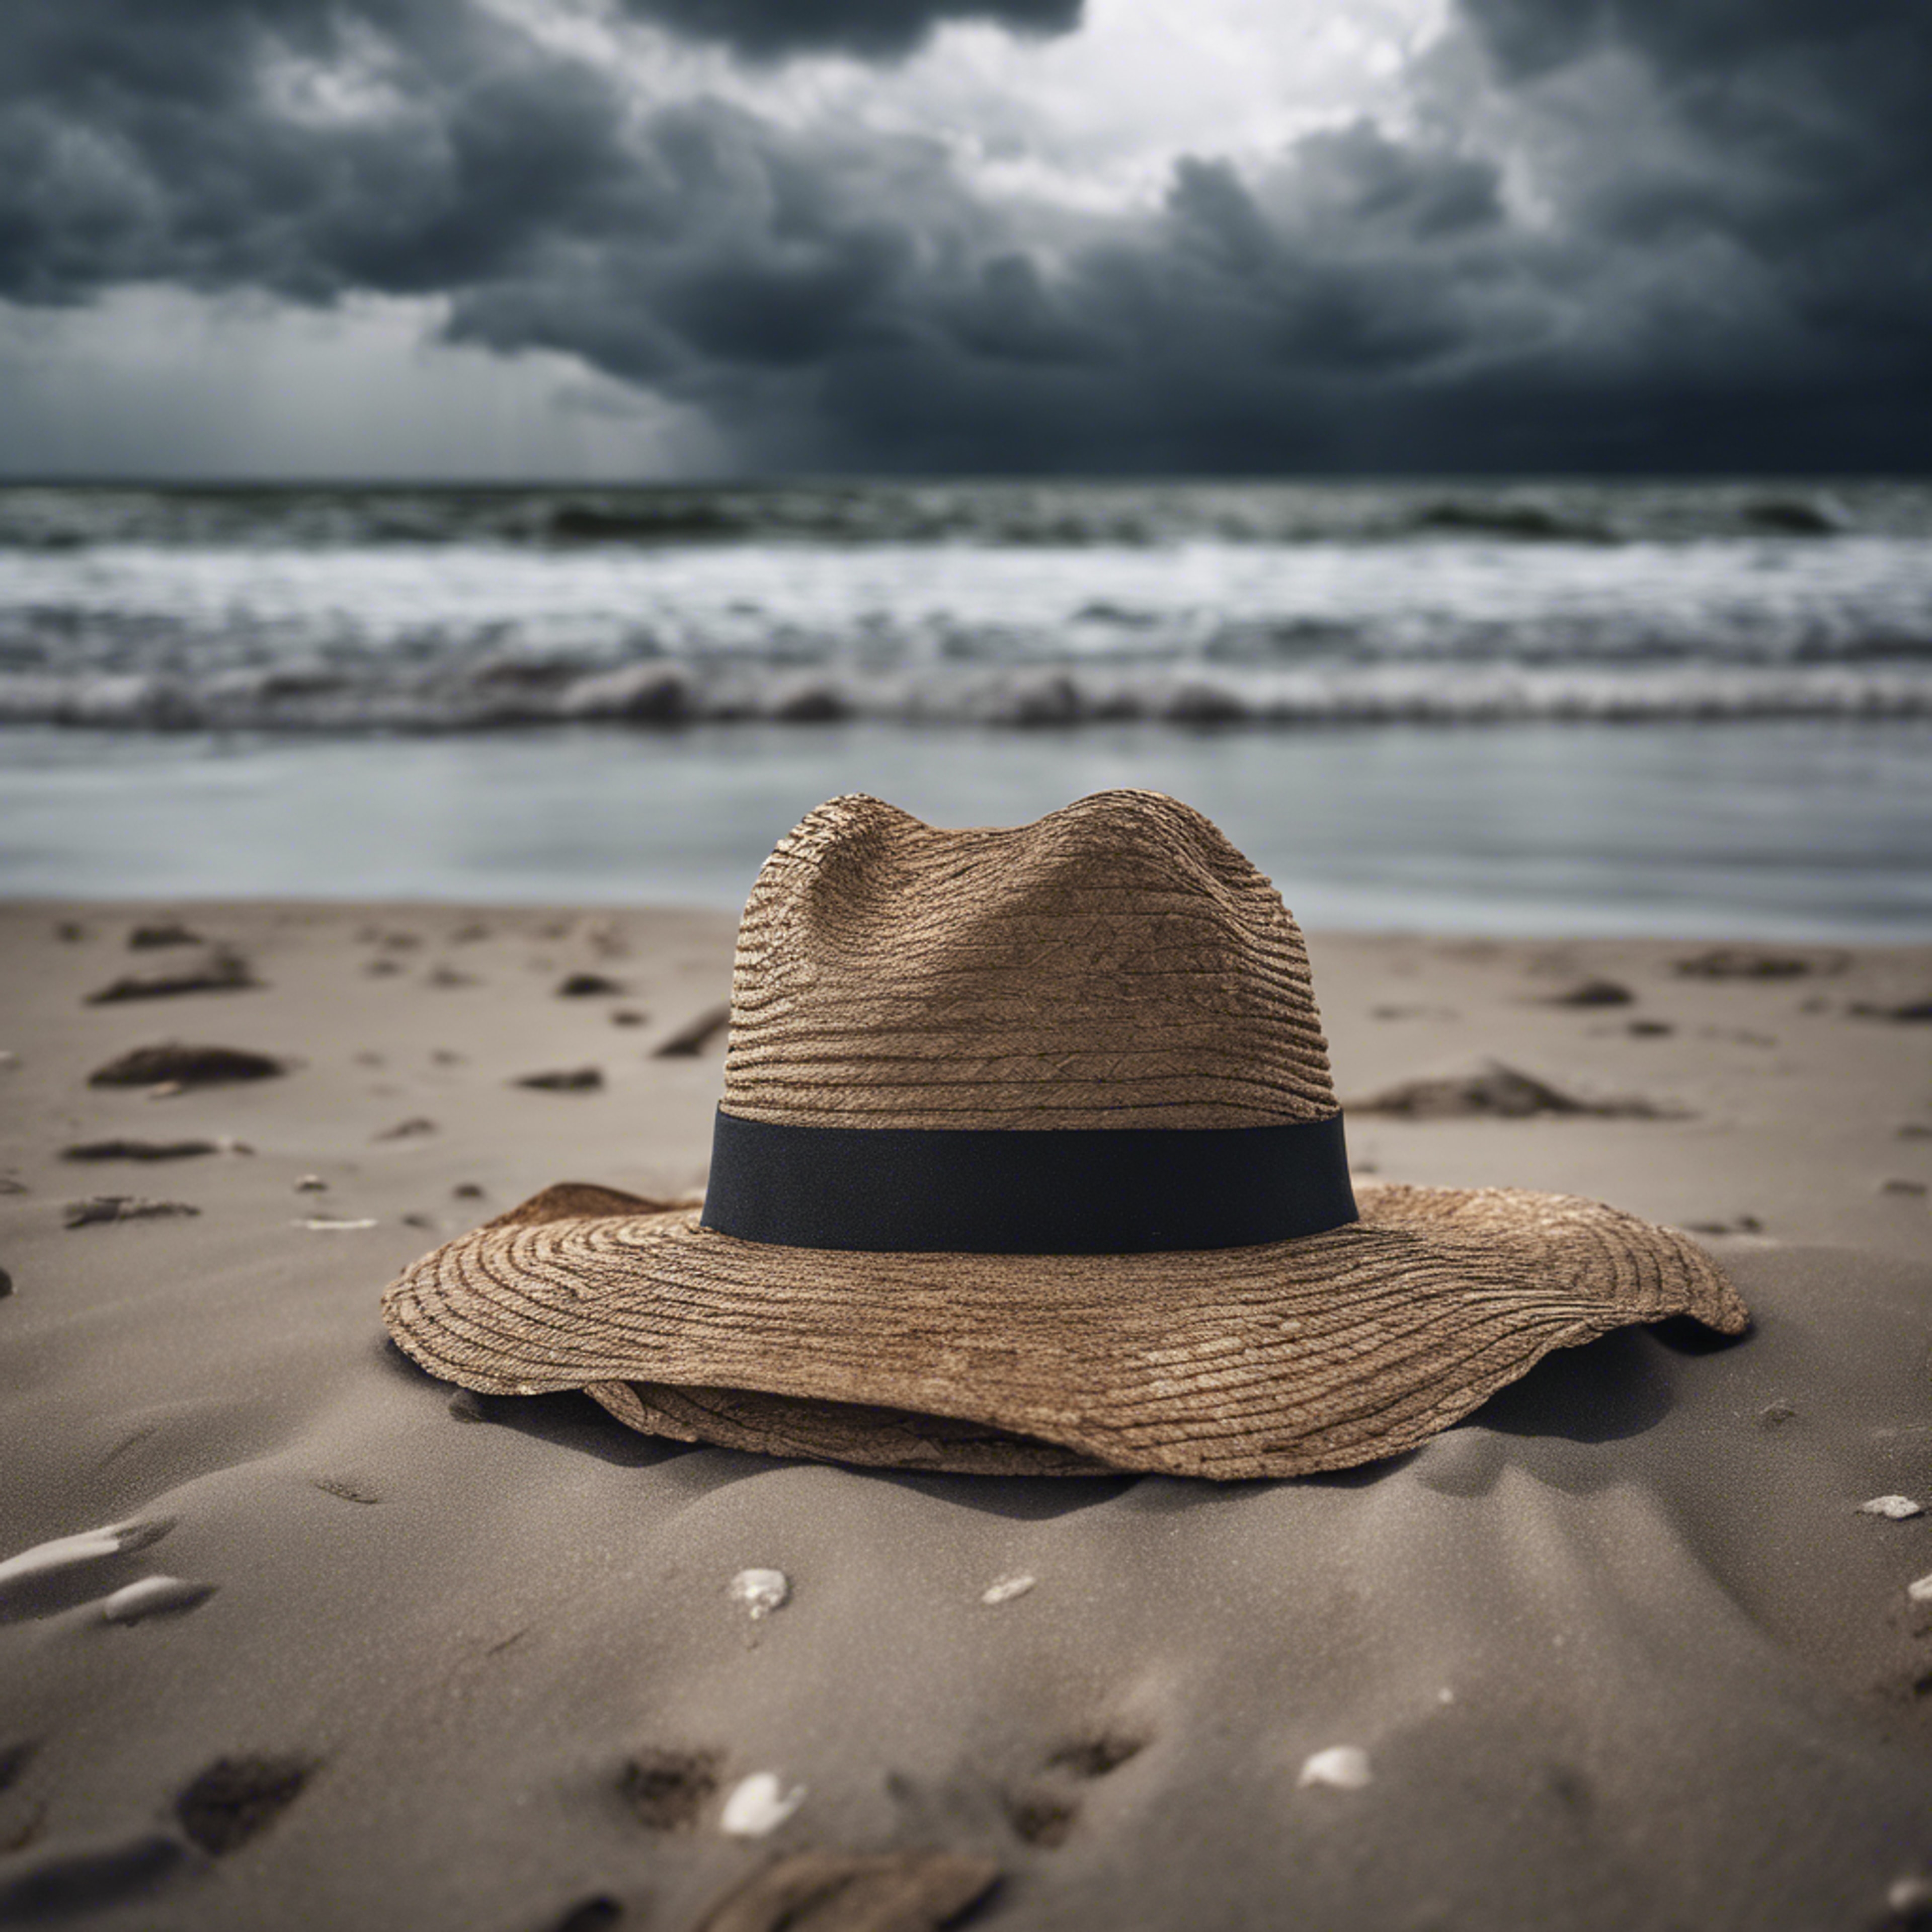 A single, forsaken hat blowing across a desolate beach under a stormy sky. טפט[22c522374a7d402da3d5]